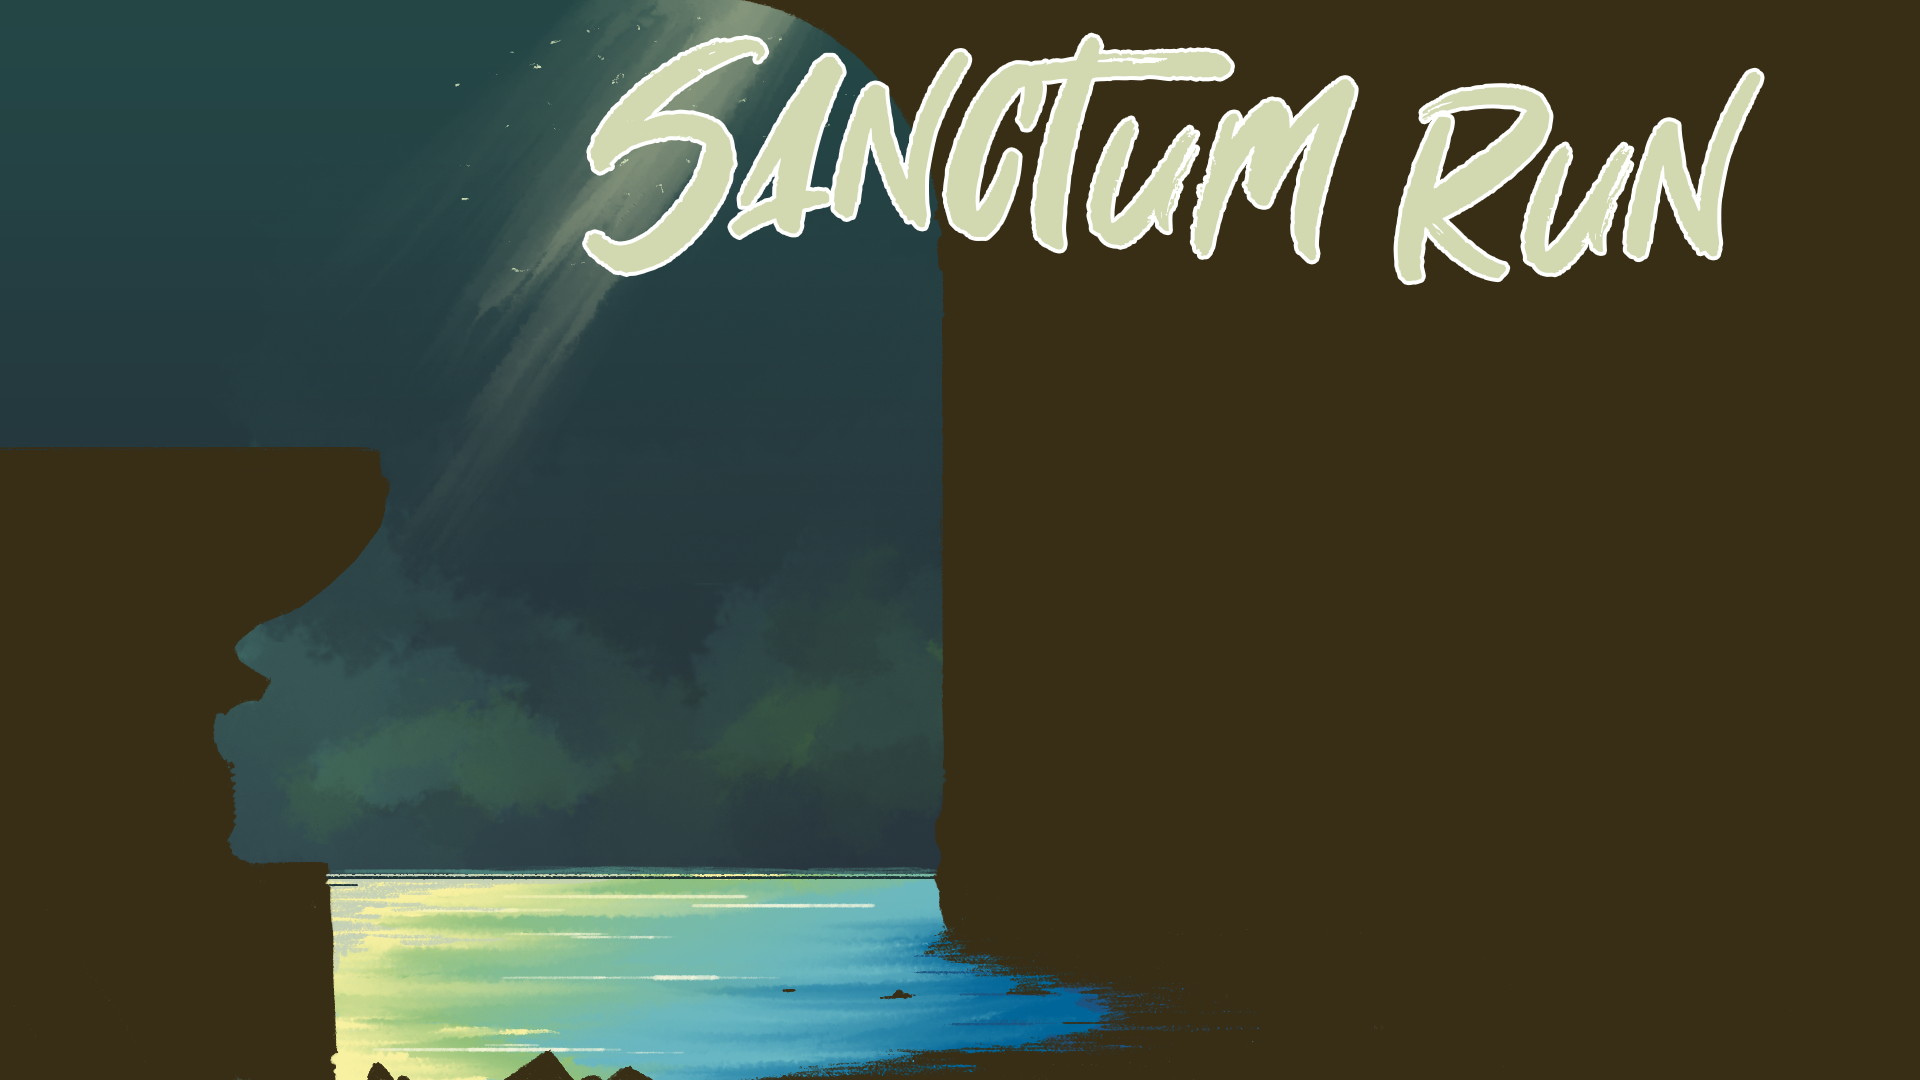 Sanctum Run